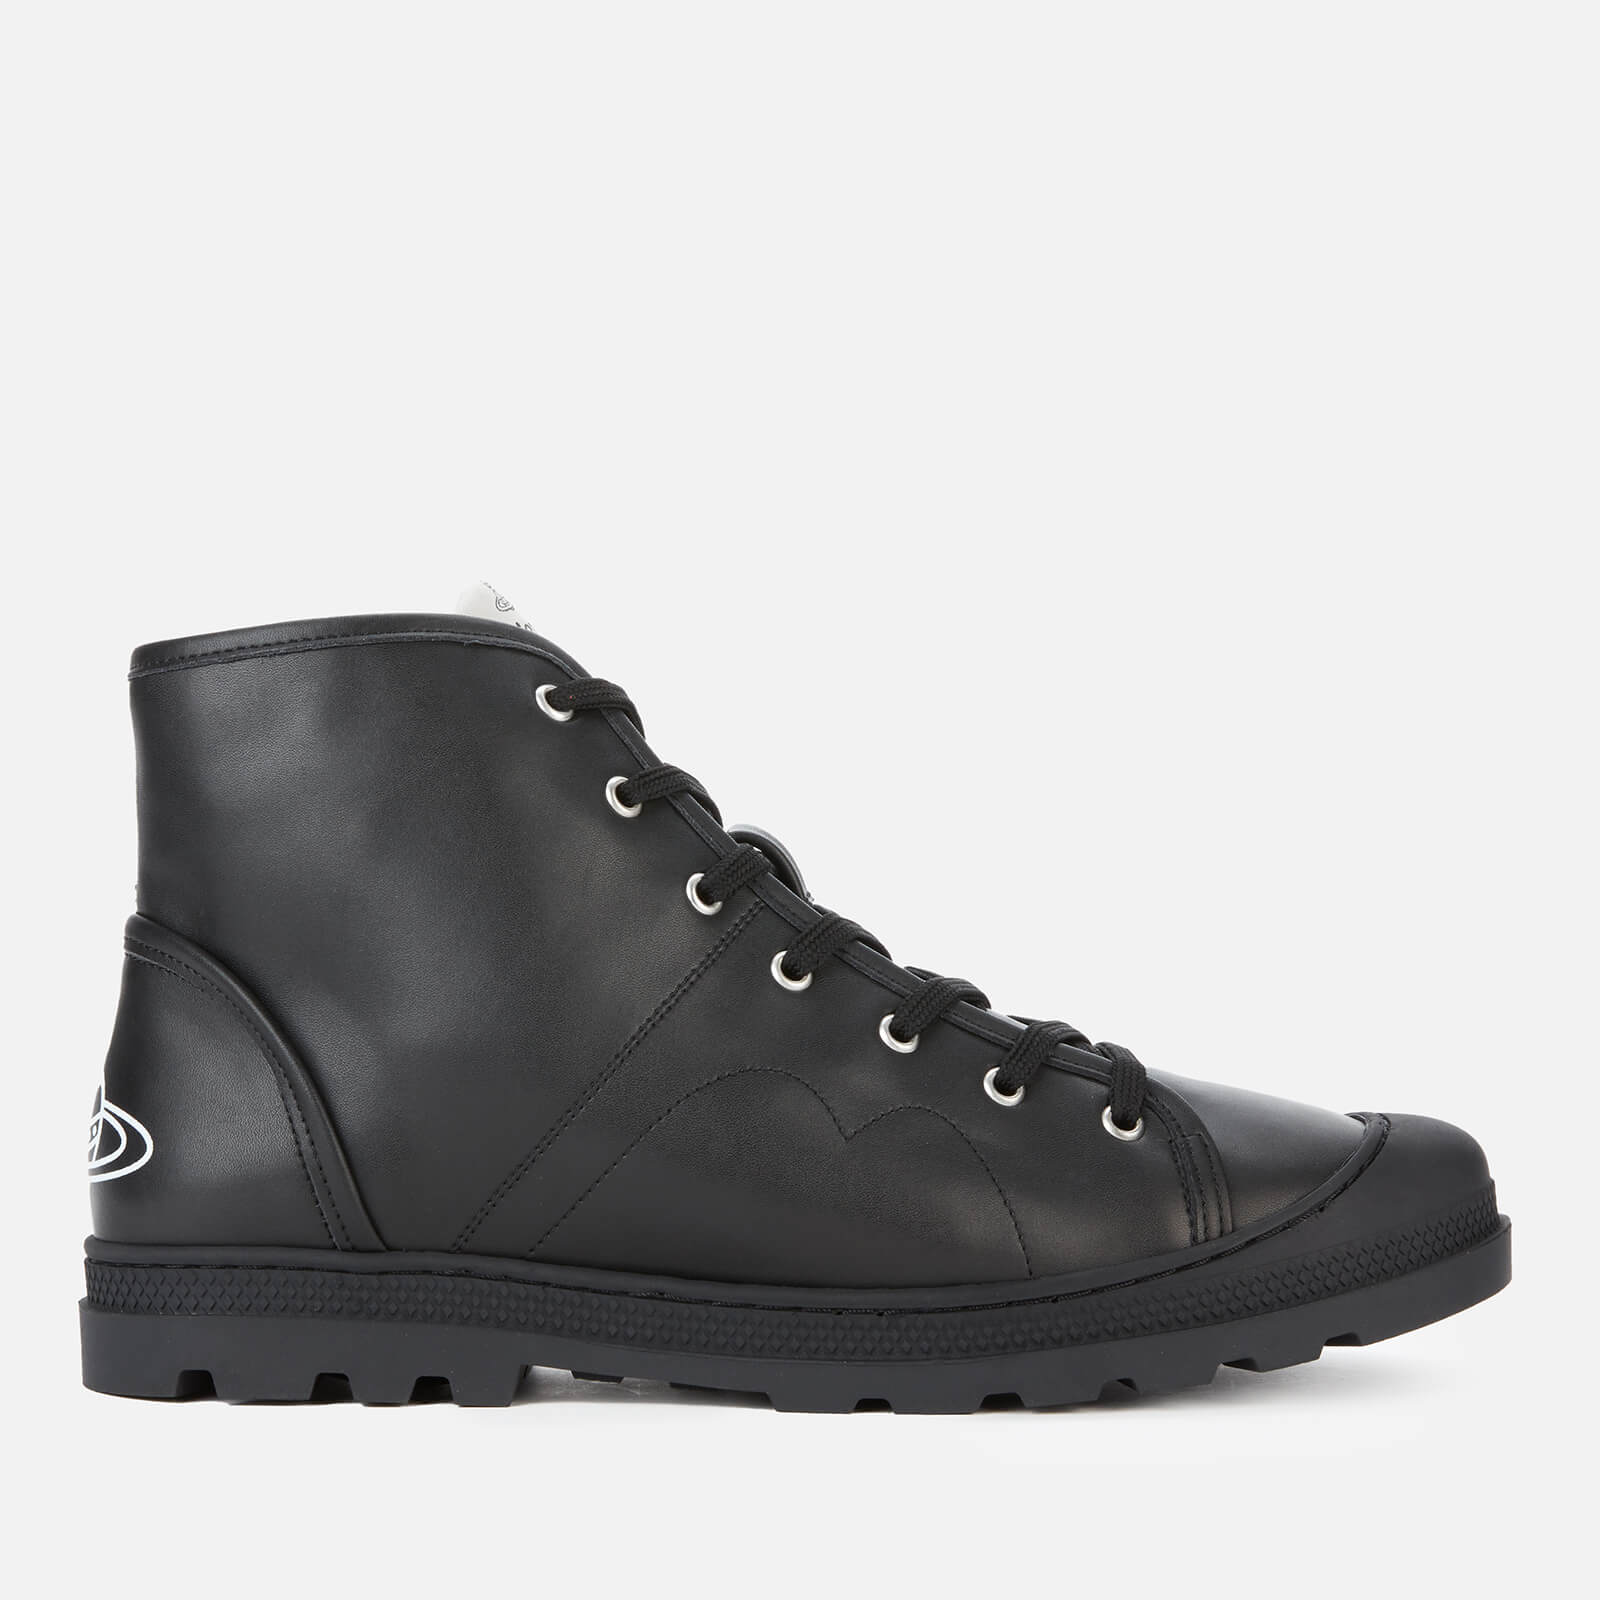 Vivienne Westwood Men's Simian Vegan Leather Boots - Black - UK 7